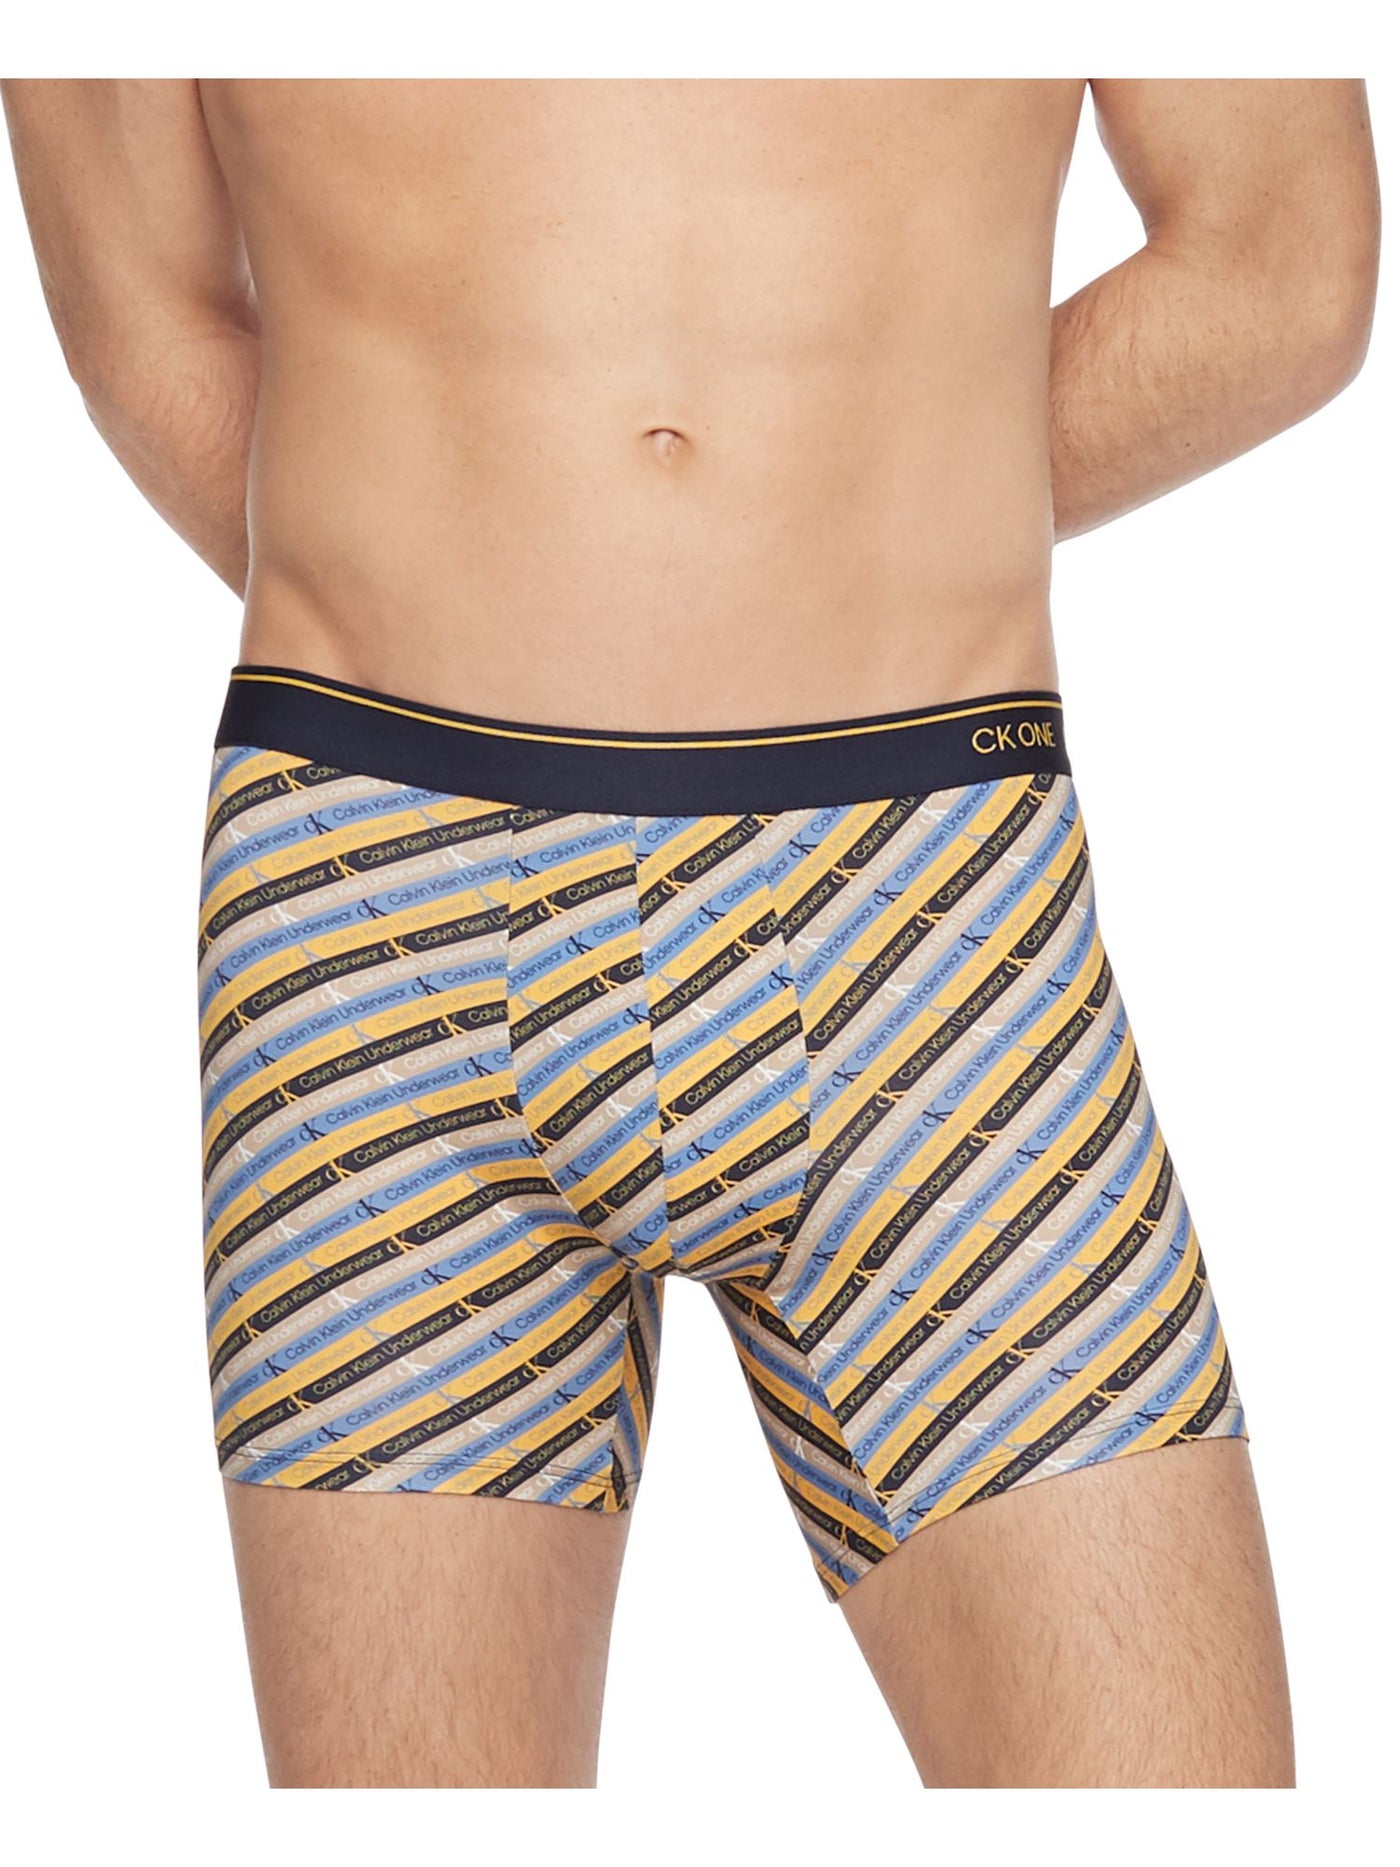 CALVIN KLEIN Intimates Blue Striped Boxer Brief Underwear XL